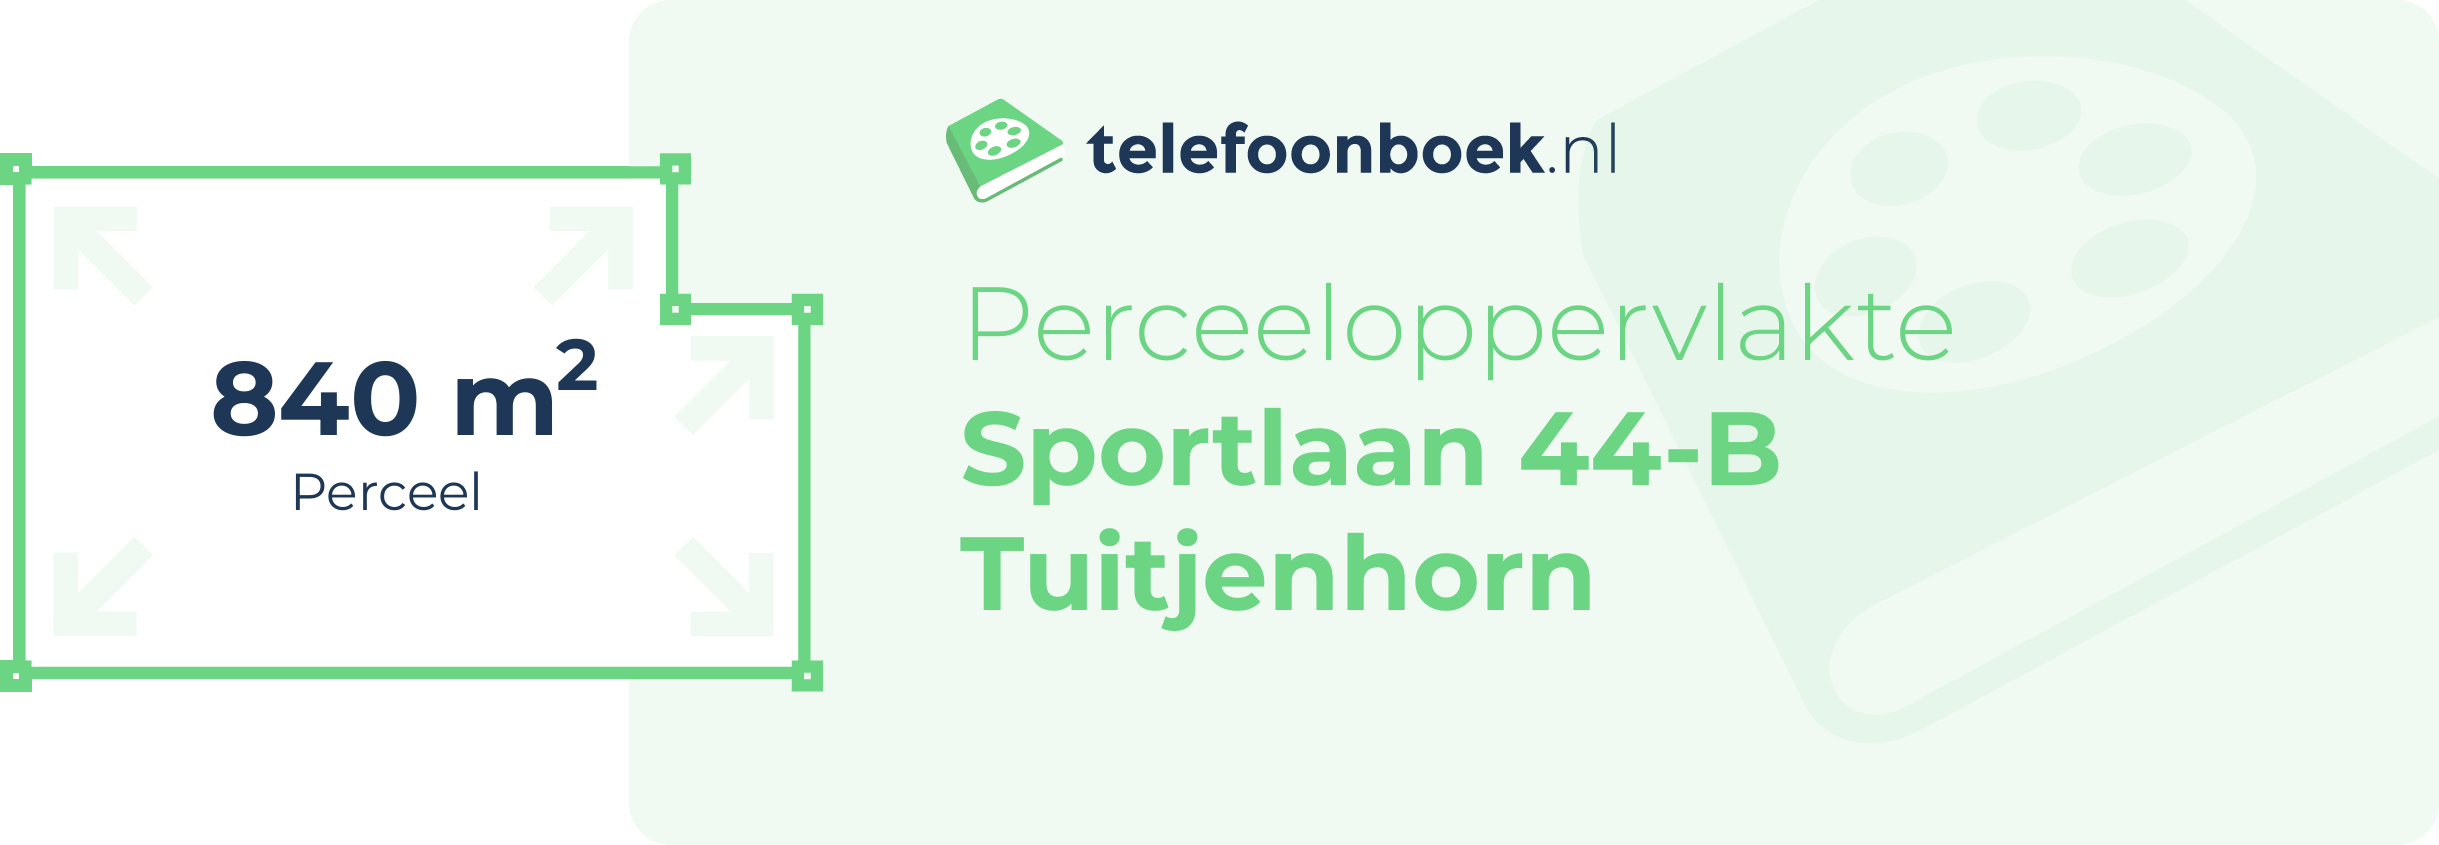 Perceeloppervlakte Sportlaan 44-B Tuitjenhorn